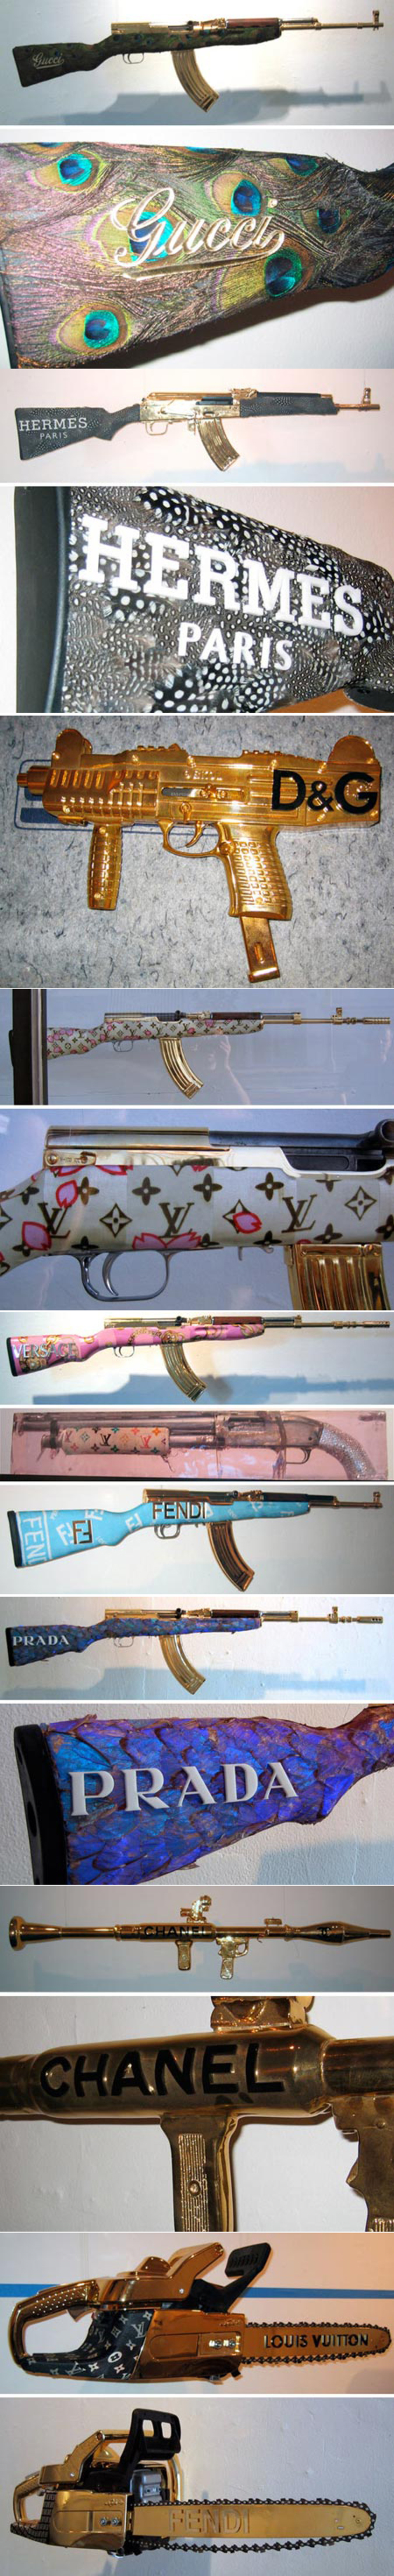 Des armes pour les amateurs de luxe.